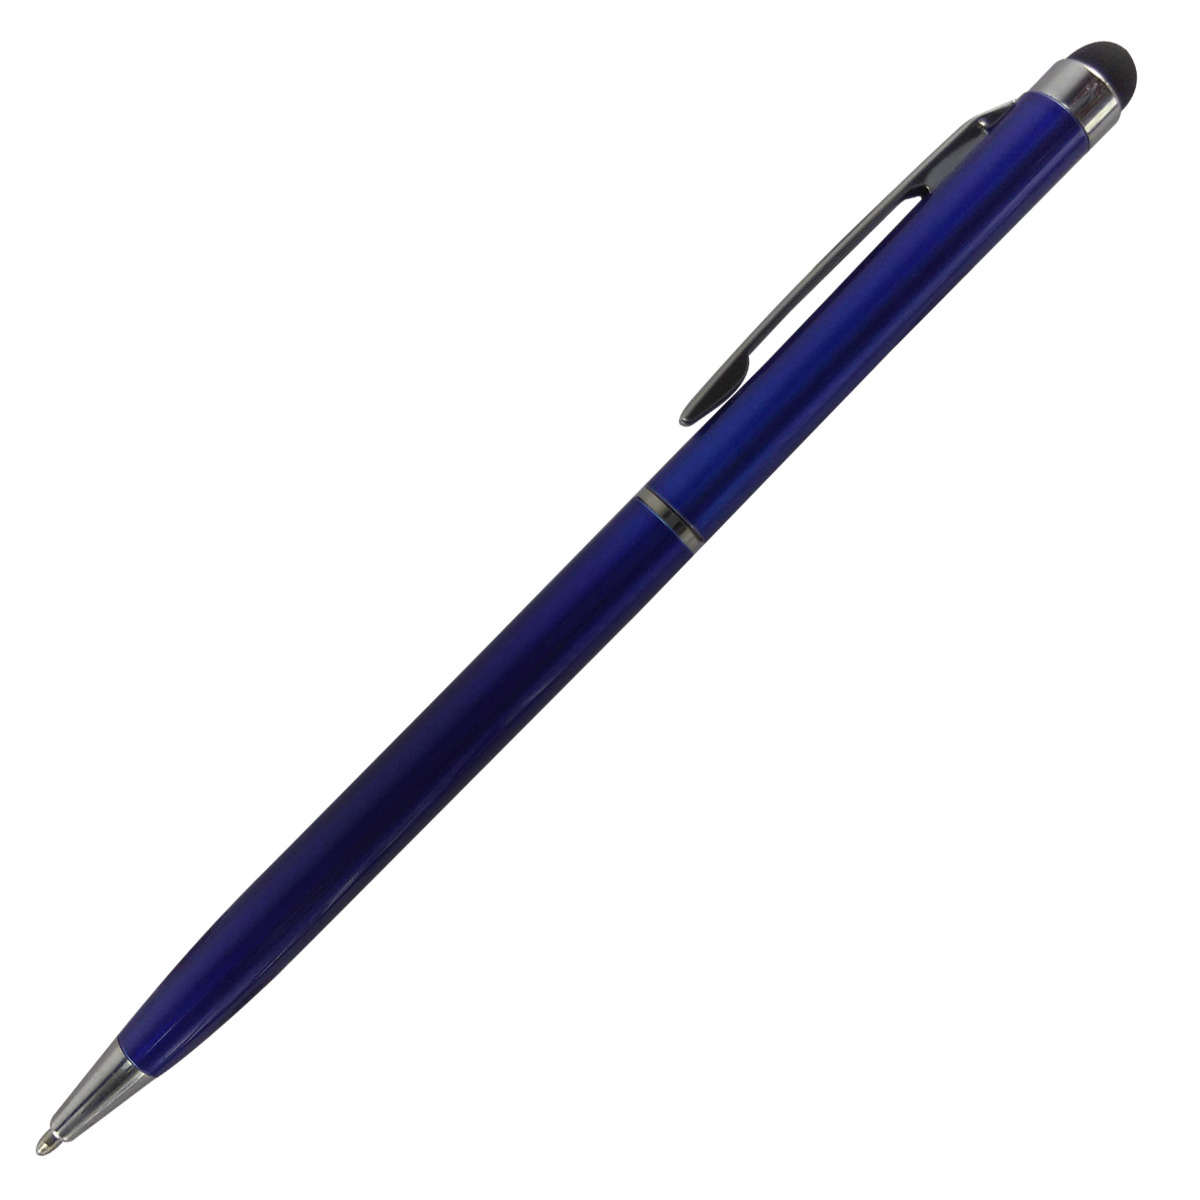 Penhouse.in - Blue  Slim Body With Stylus On Head Twist type Ball Pen Model No 13079